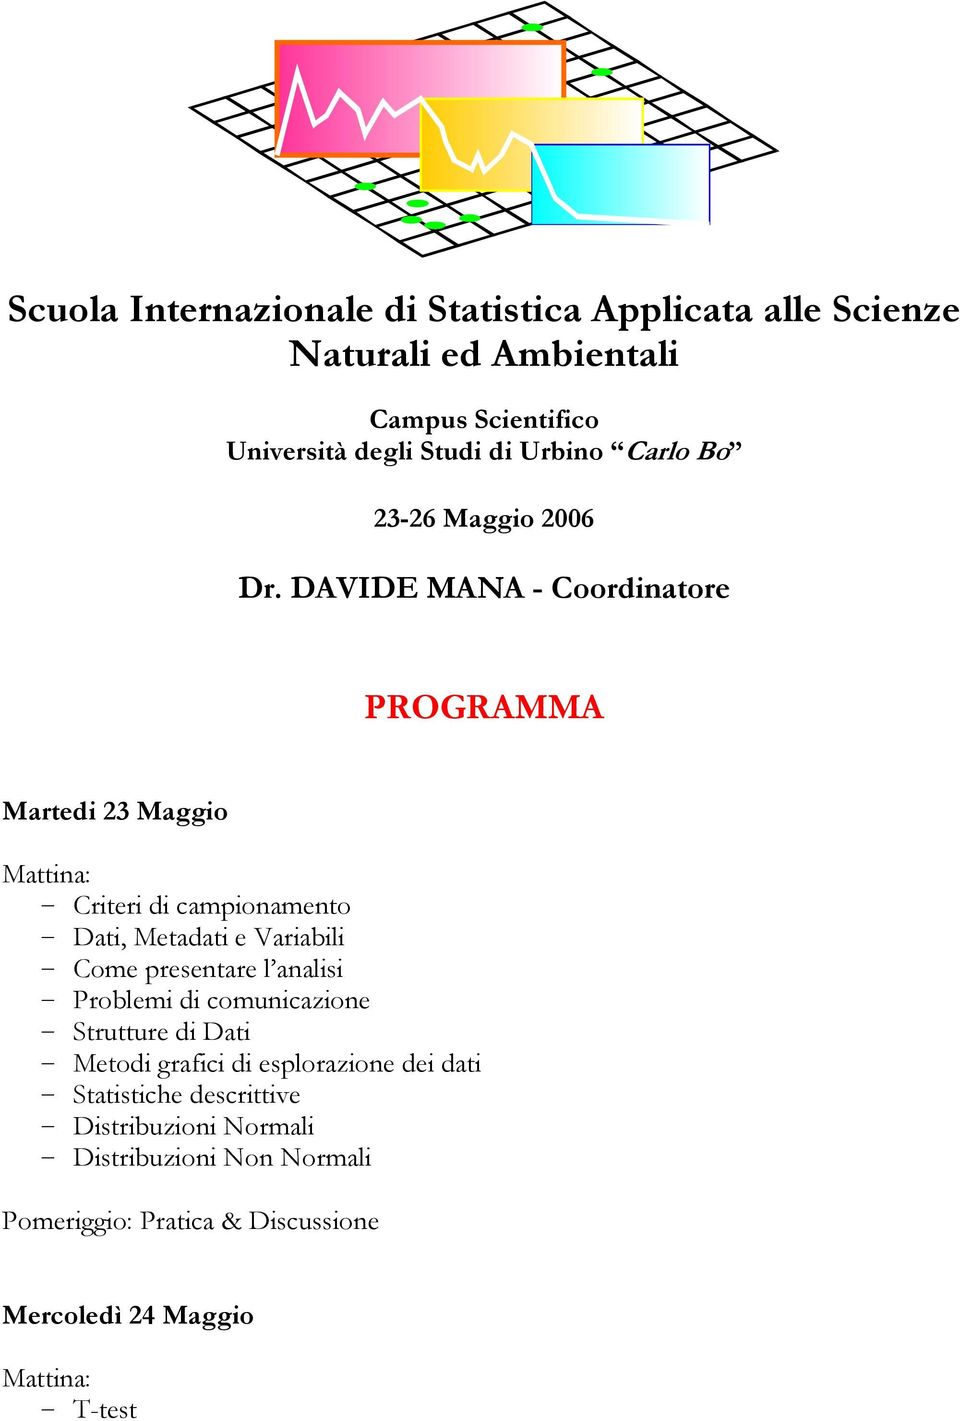 DAVIDE MANA - Coordinatore PROGRAMMA Martedi 2 Maggio Mattina: - Criteri di campionamento - Dati, Metadati e Variabili - Come presentare